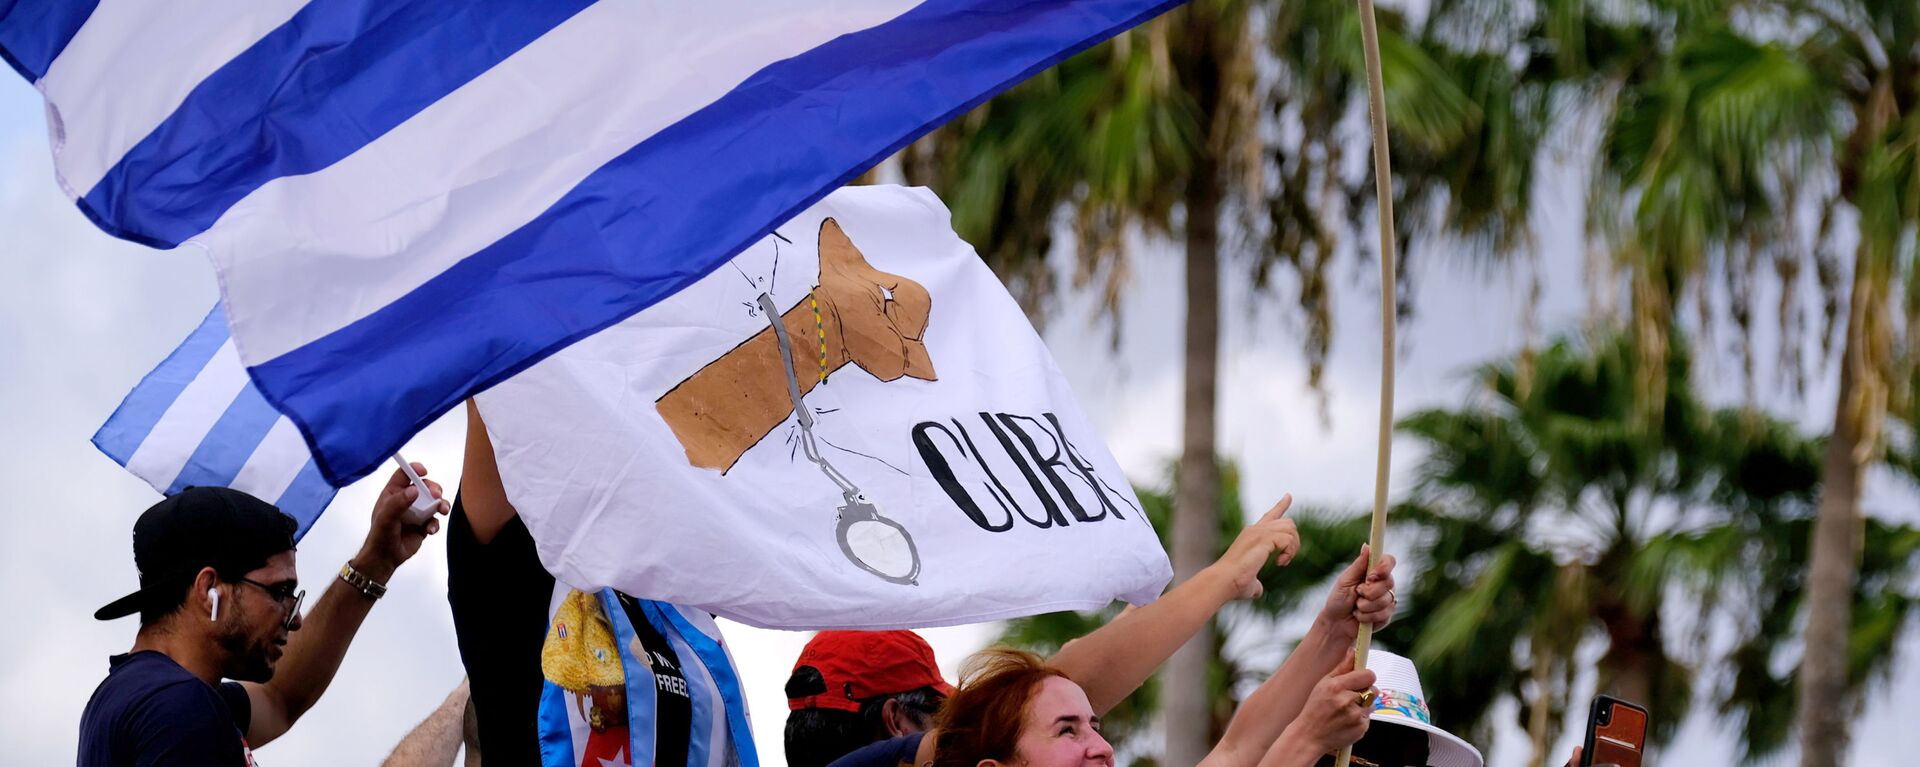 المهاجرون في ليتل هافانا يلوحون بالأعلام الكوبية أثناء ردهم على تقارير الاحتجاجات في كوبا ضد الاقتصاد المتدهور - سبوتنيك عربي, 1920, 13.07.2021